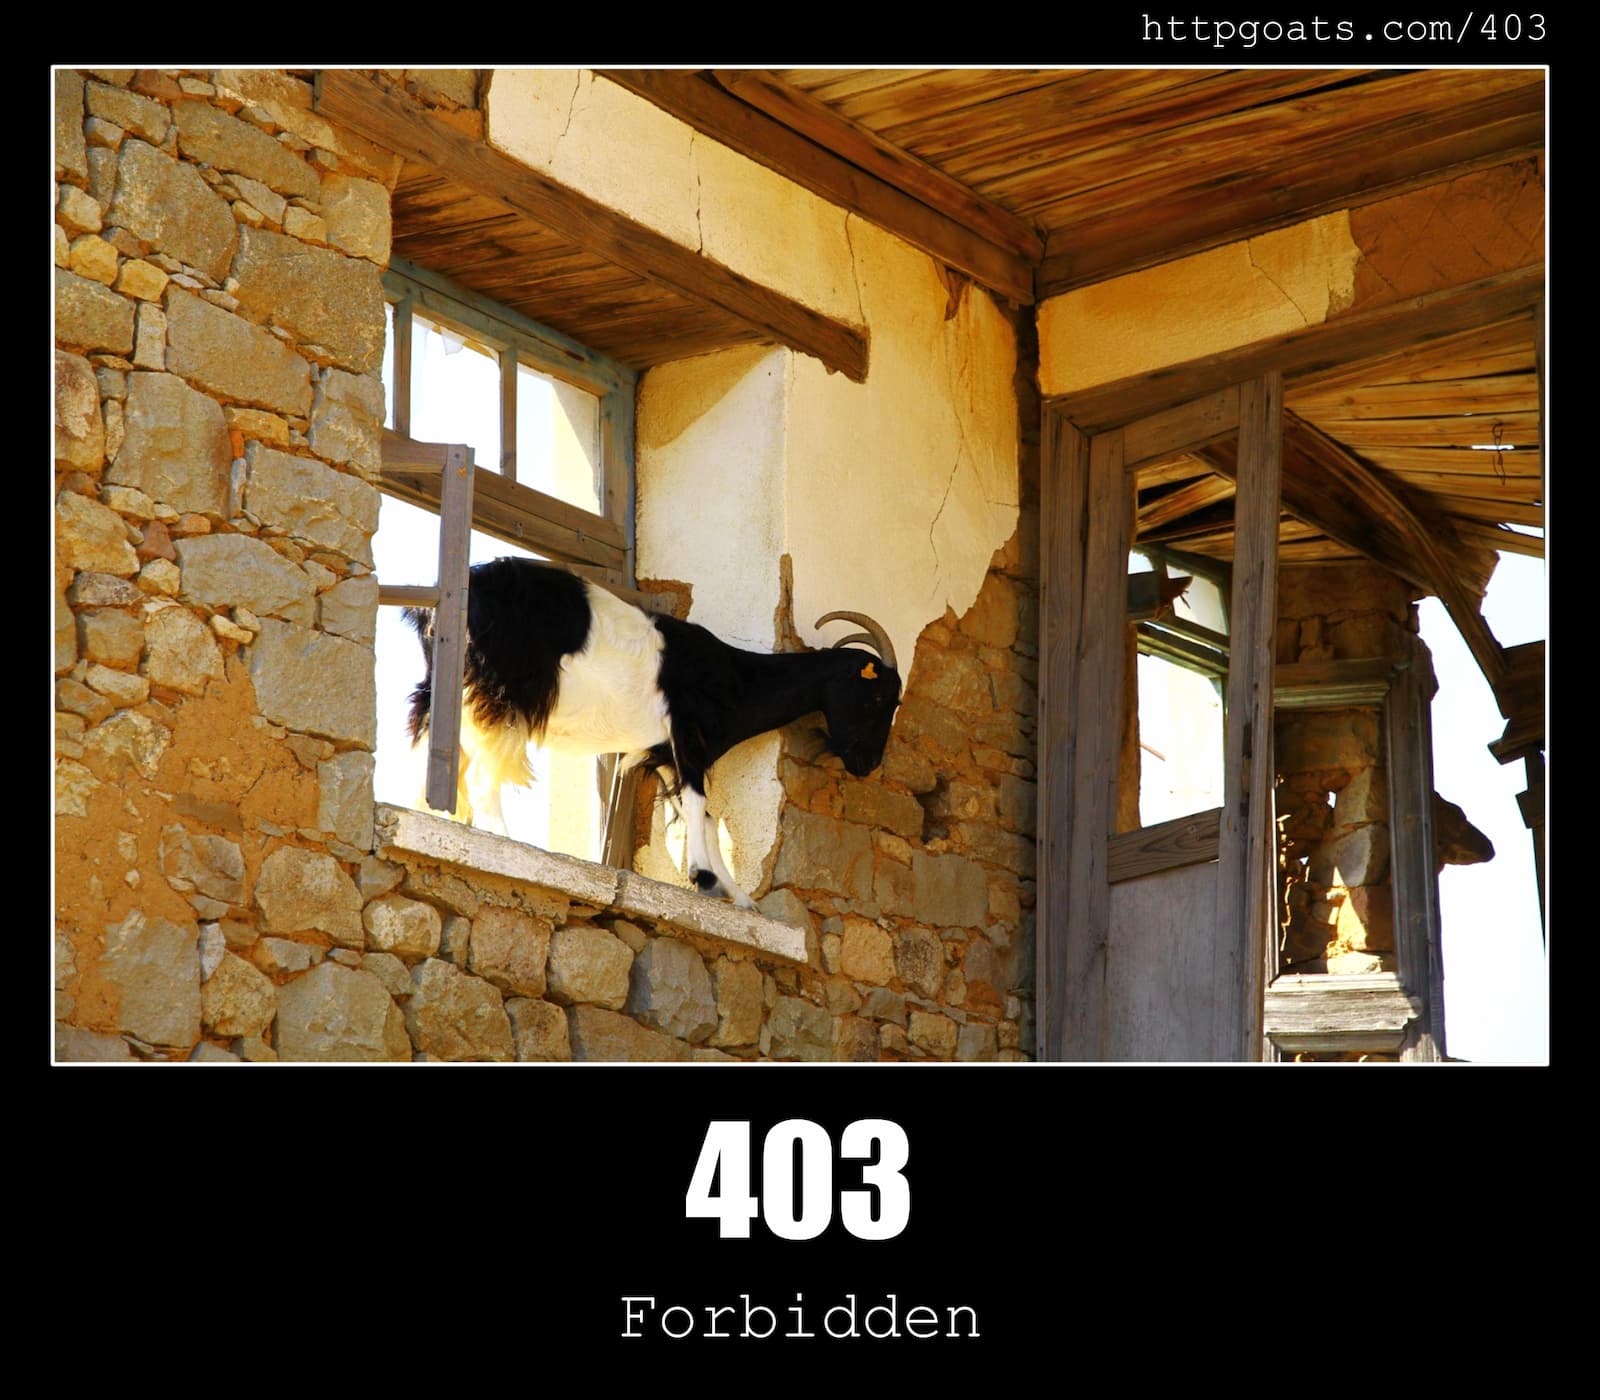 HTTP Status Code 403 Forbidden & Goats